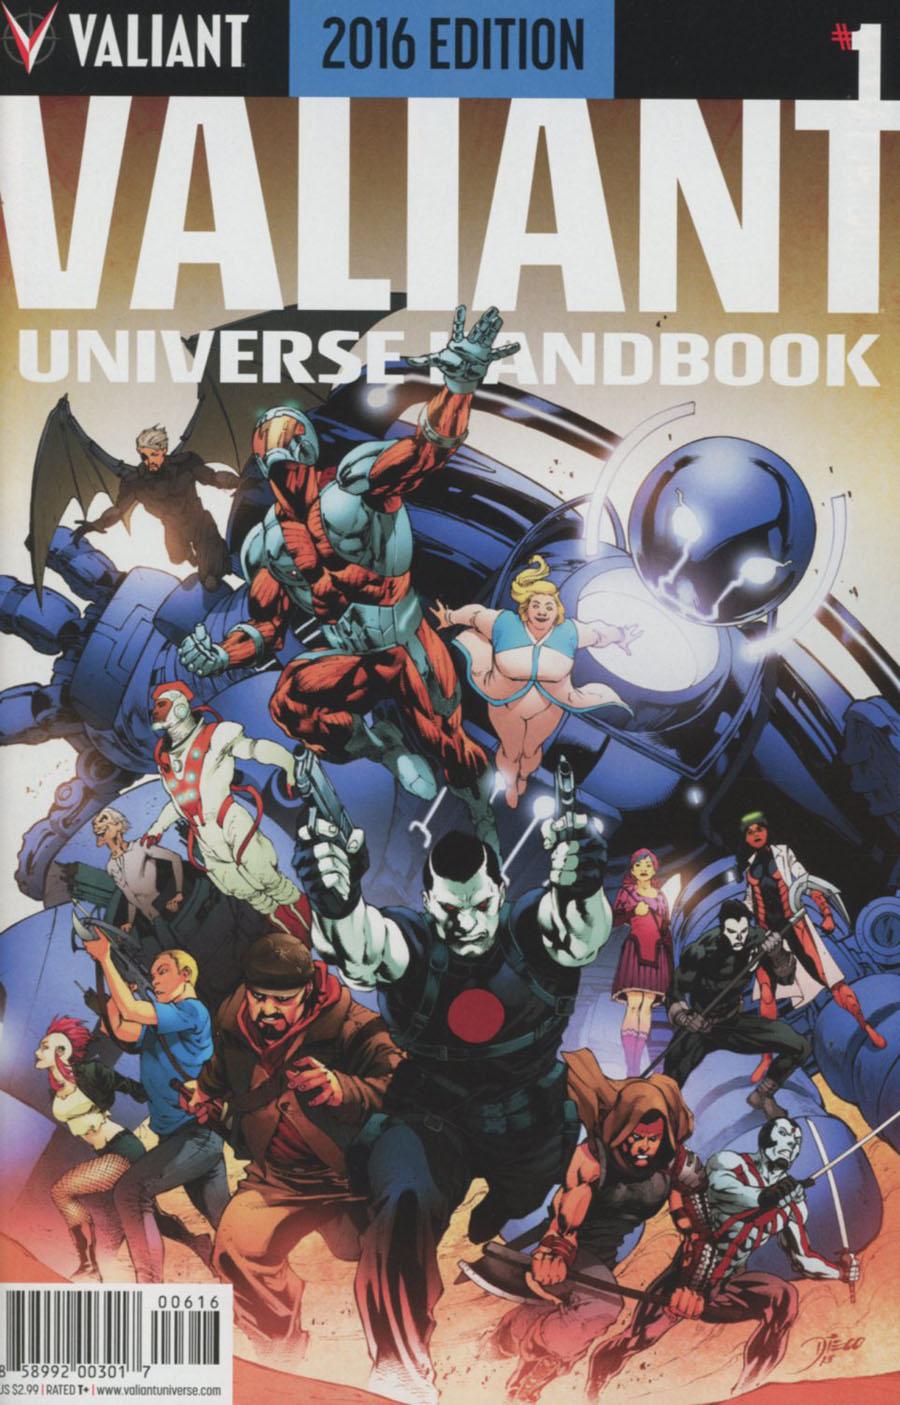 Valiant Universe Handbook 2016 Edition Vol. 1 #1